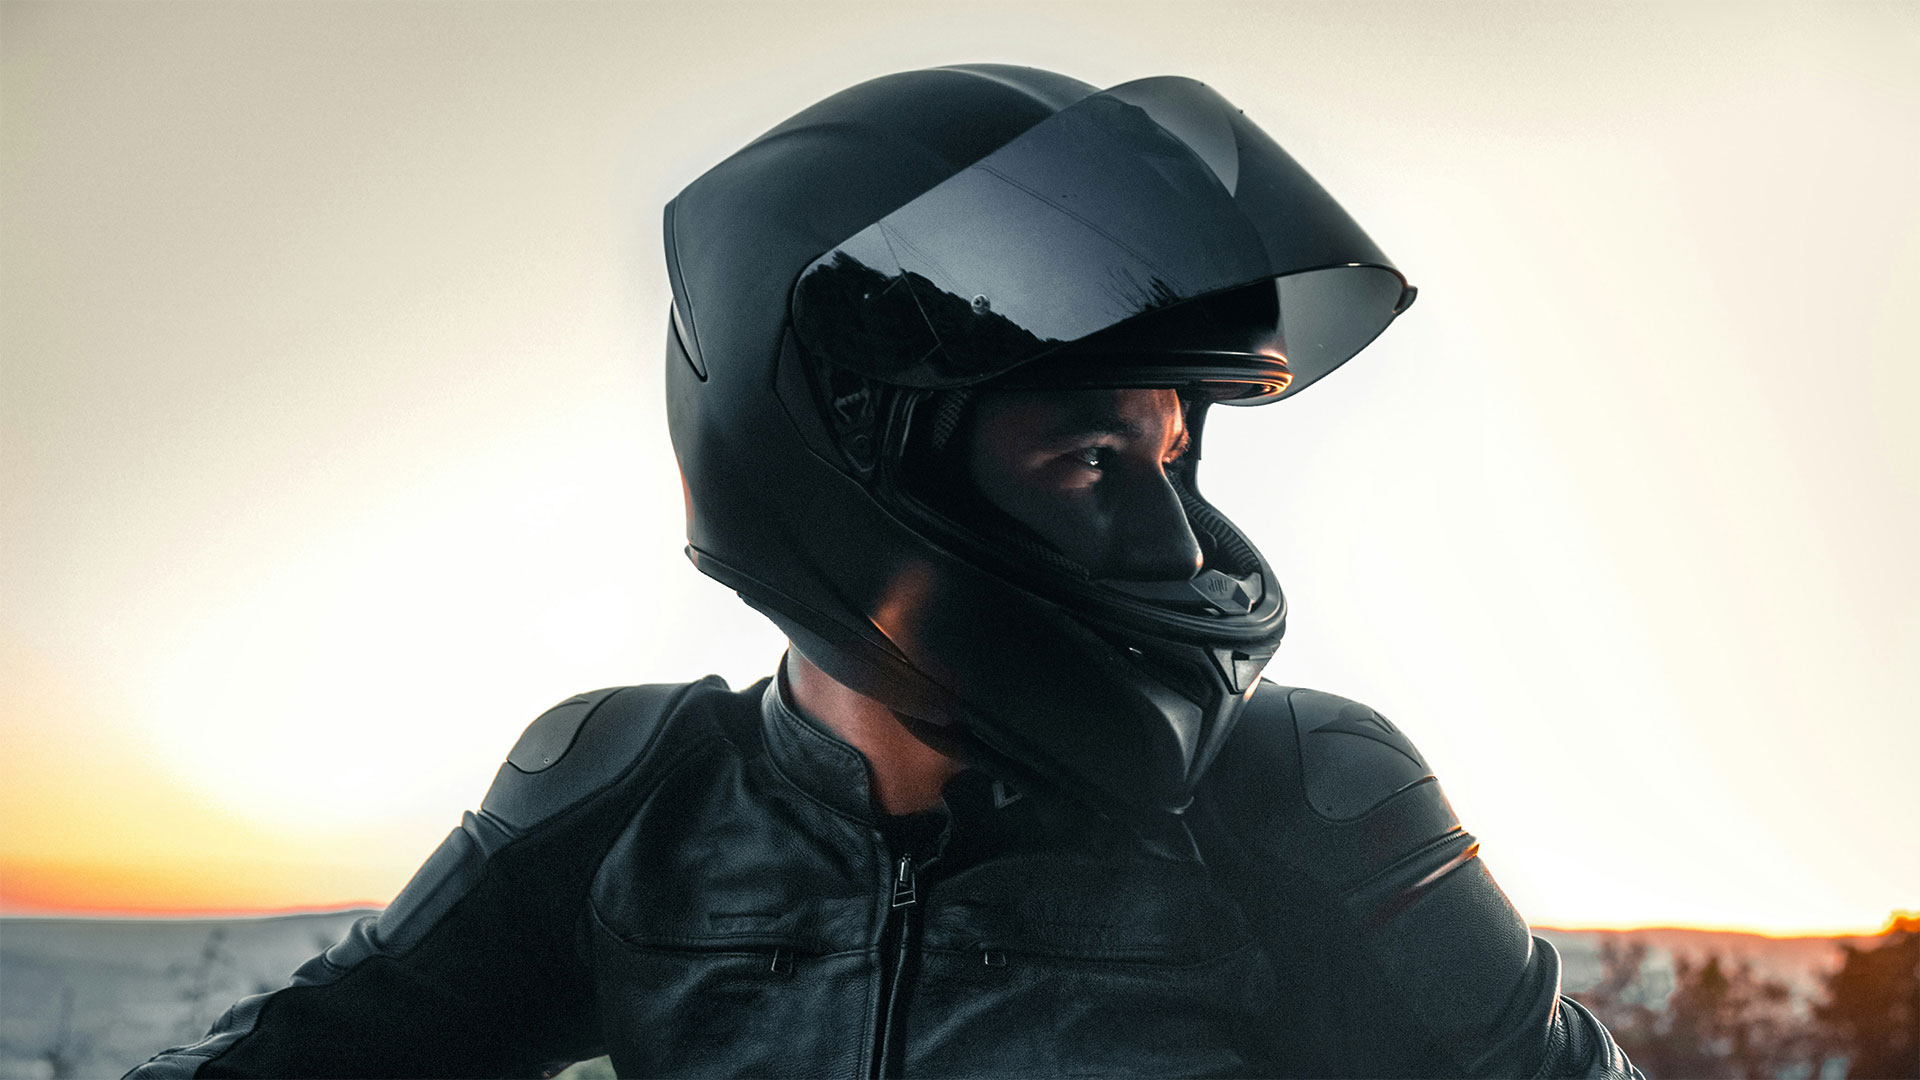 Ein Motorradfahrer in einer schwarzen Lederkombi blickt aus seinem Helm